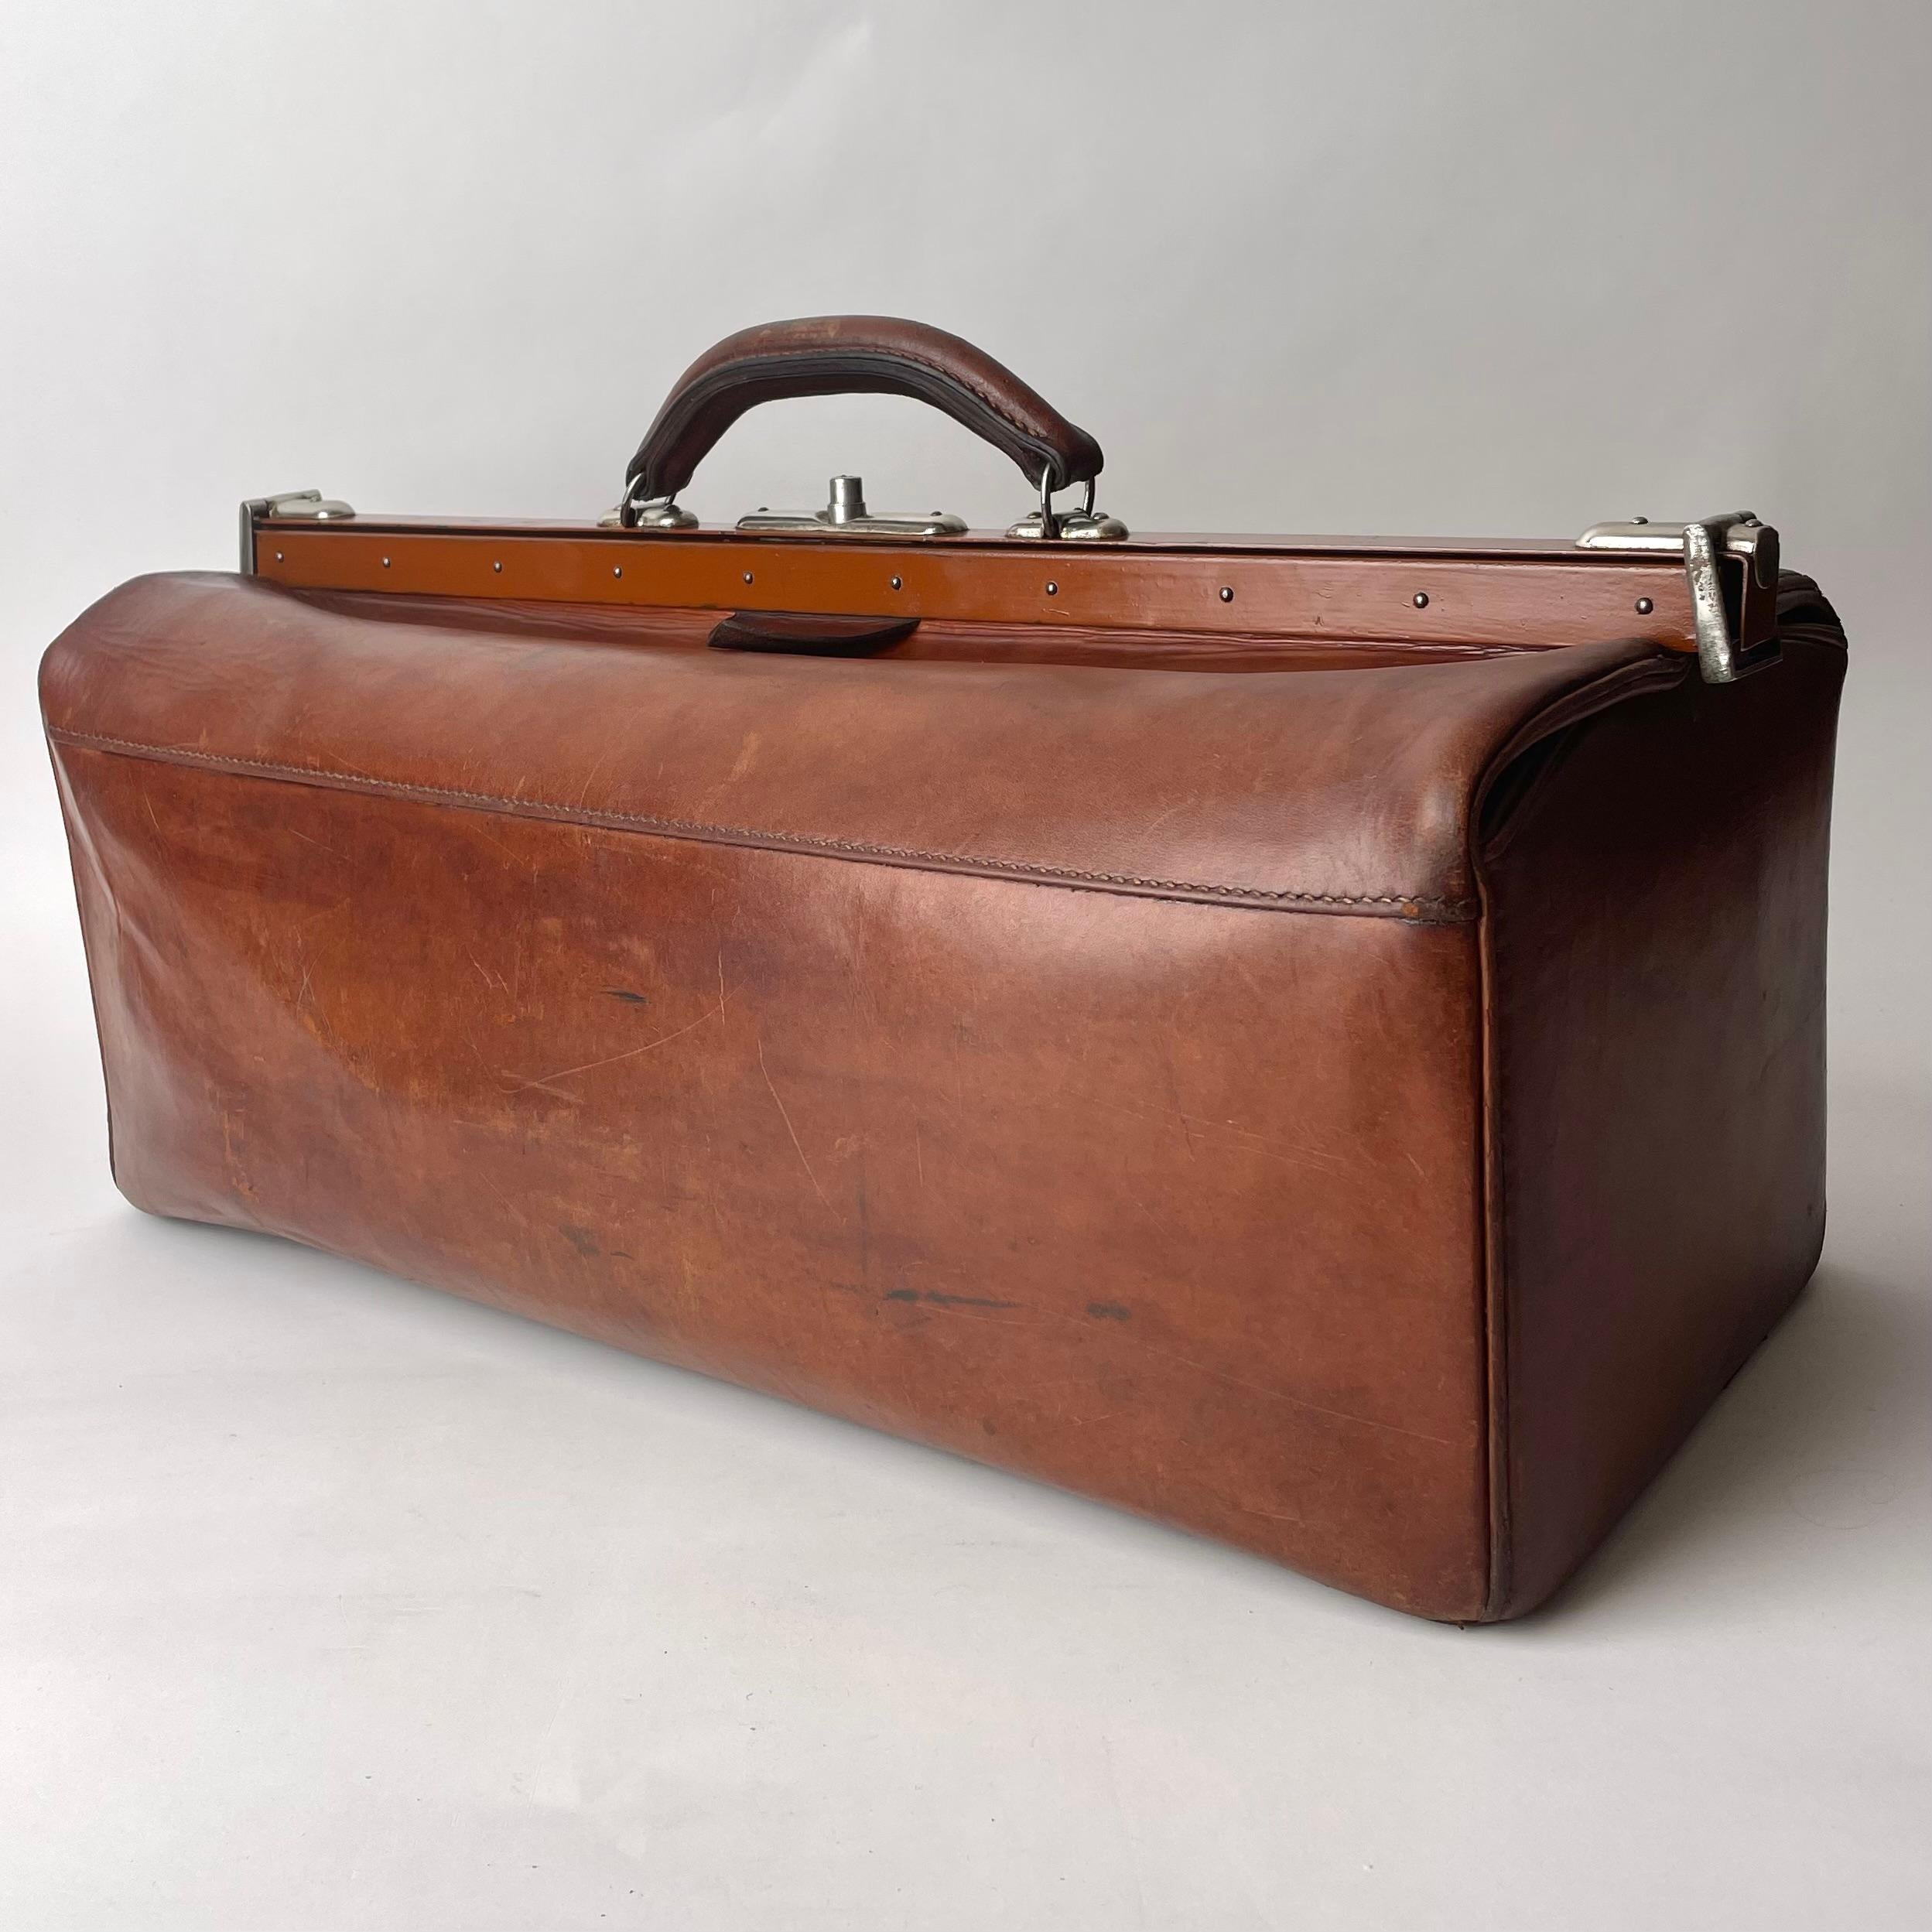 A Vintage Luggage Reisetasche in braunem Leder mit Nickel Details. Europa im frühen 19. Jahrhundert. 

Eine schlichte und elegante Vintage-Gepäcktasche aus schönem braunen Leder. Komplett mit Nickeldetails und einem funktionellen Schlossmechanismus.